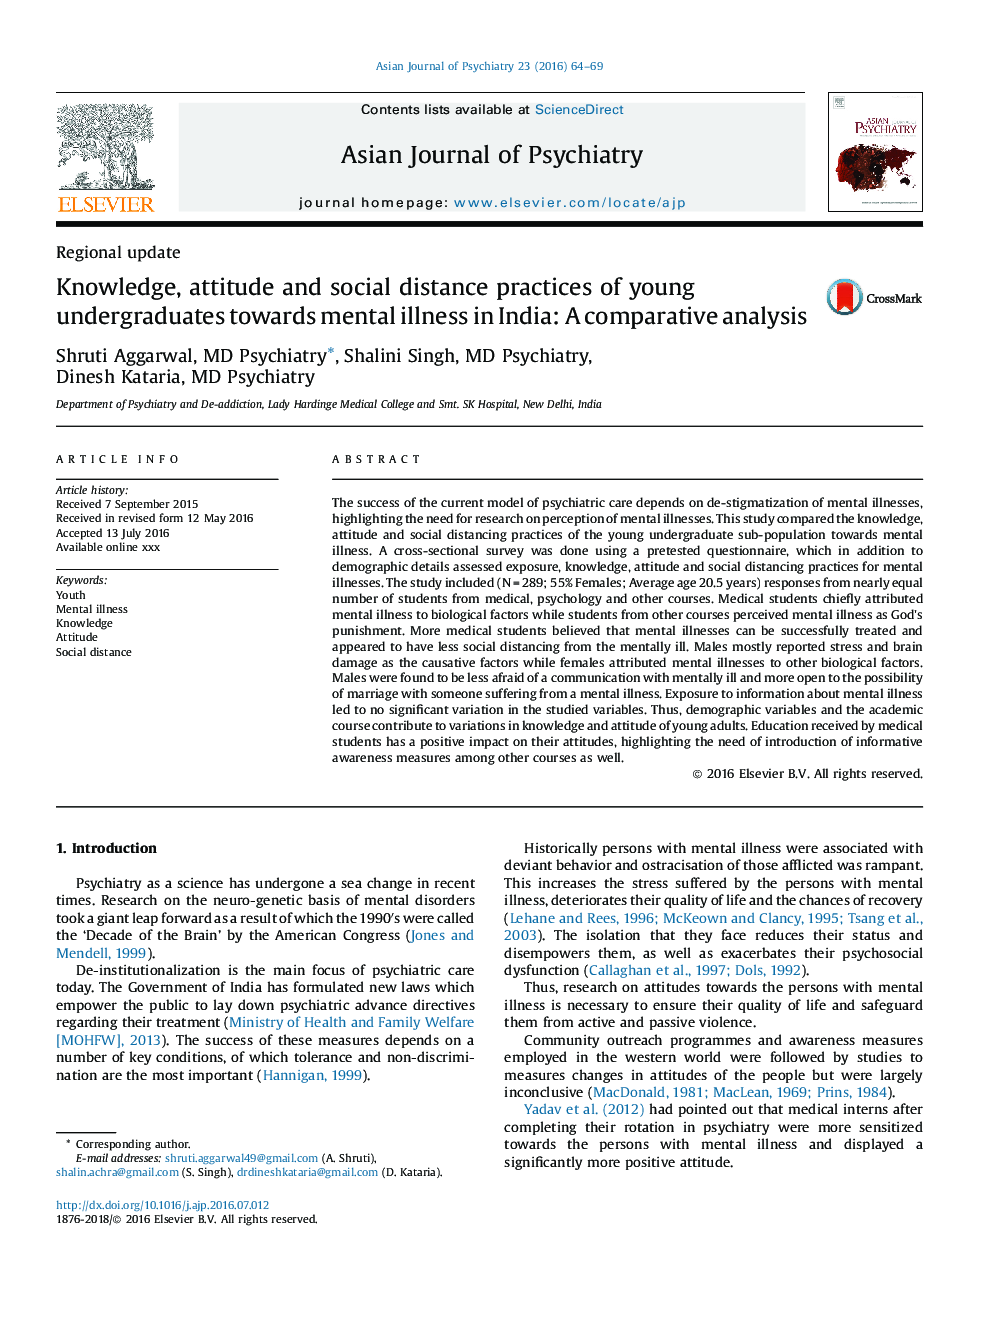 شیوه های آگاهی، نگرش و فاصله اجتماعی دانشجویان جوان نسبت به بیماری های روانی در هند: تجزیه و تحلیل مقایسه‌ای